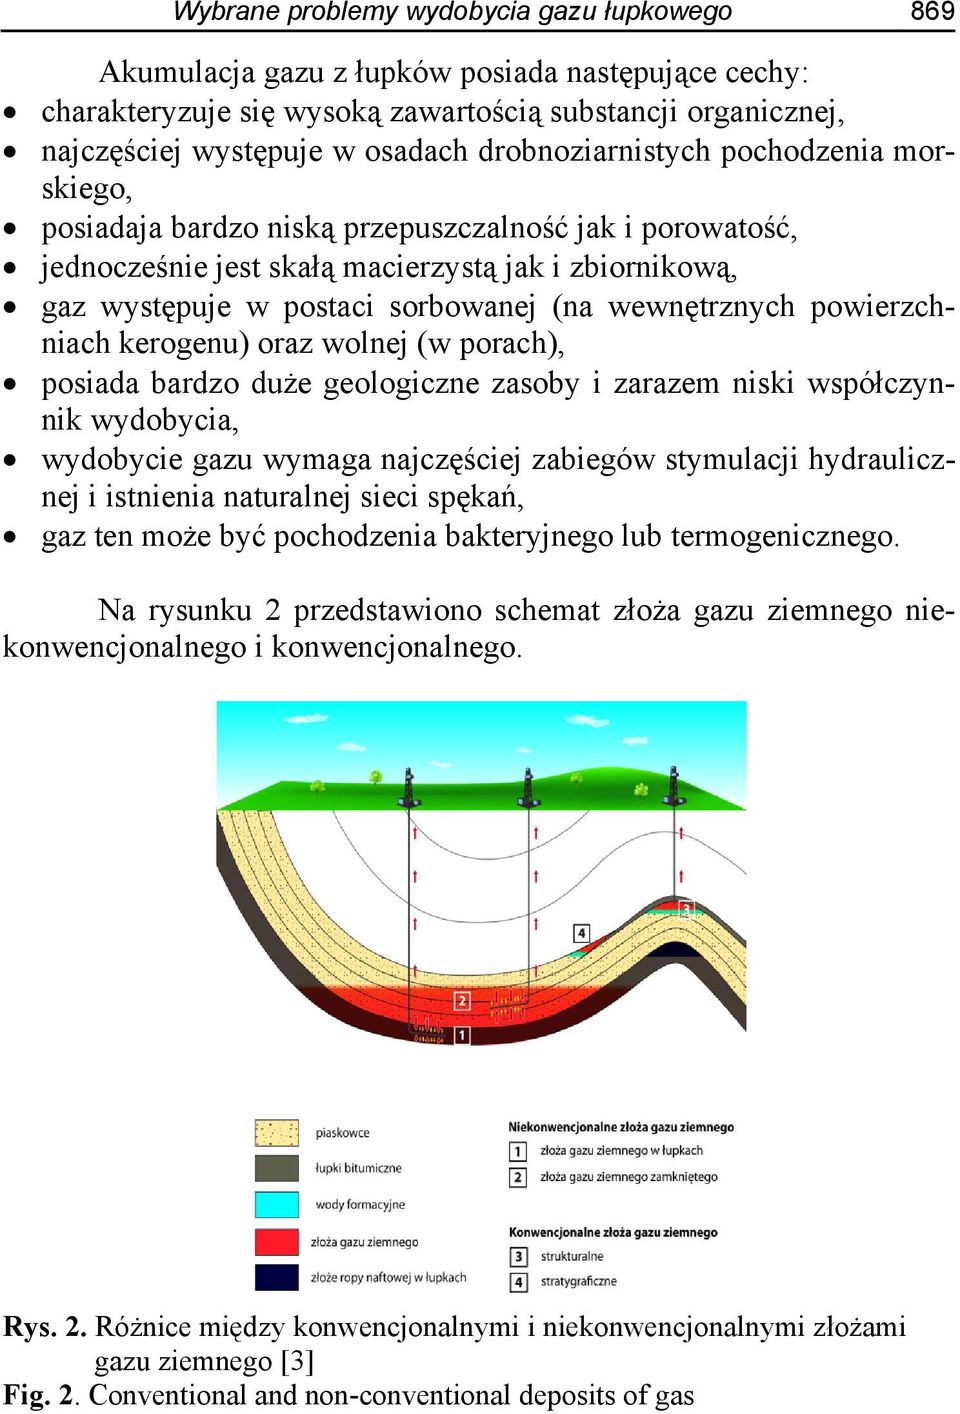 wewnętrznych powierzchniach kerogenu) oraz wolnej (w porach), posiada bardzo duże geologiczne zasoby i zarazem niski współczynnik wydobycia, wydobycie gazu wymaga najczęściej zabiegów stymulacji